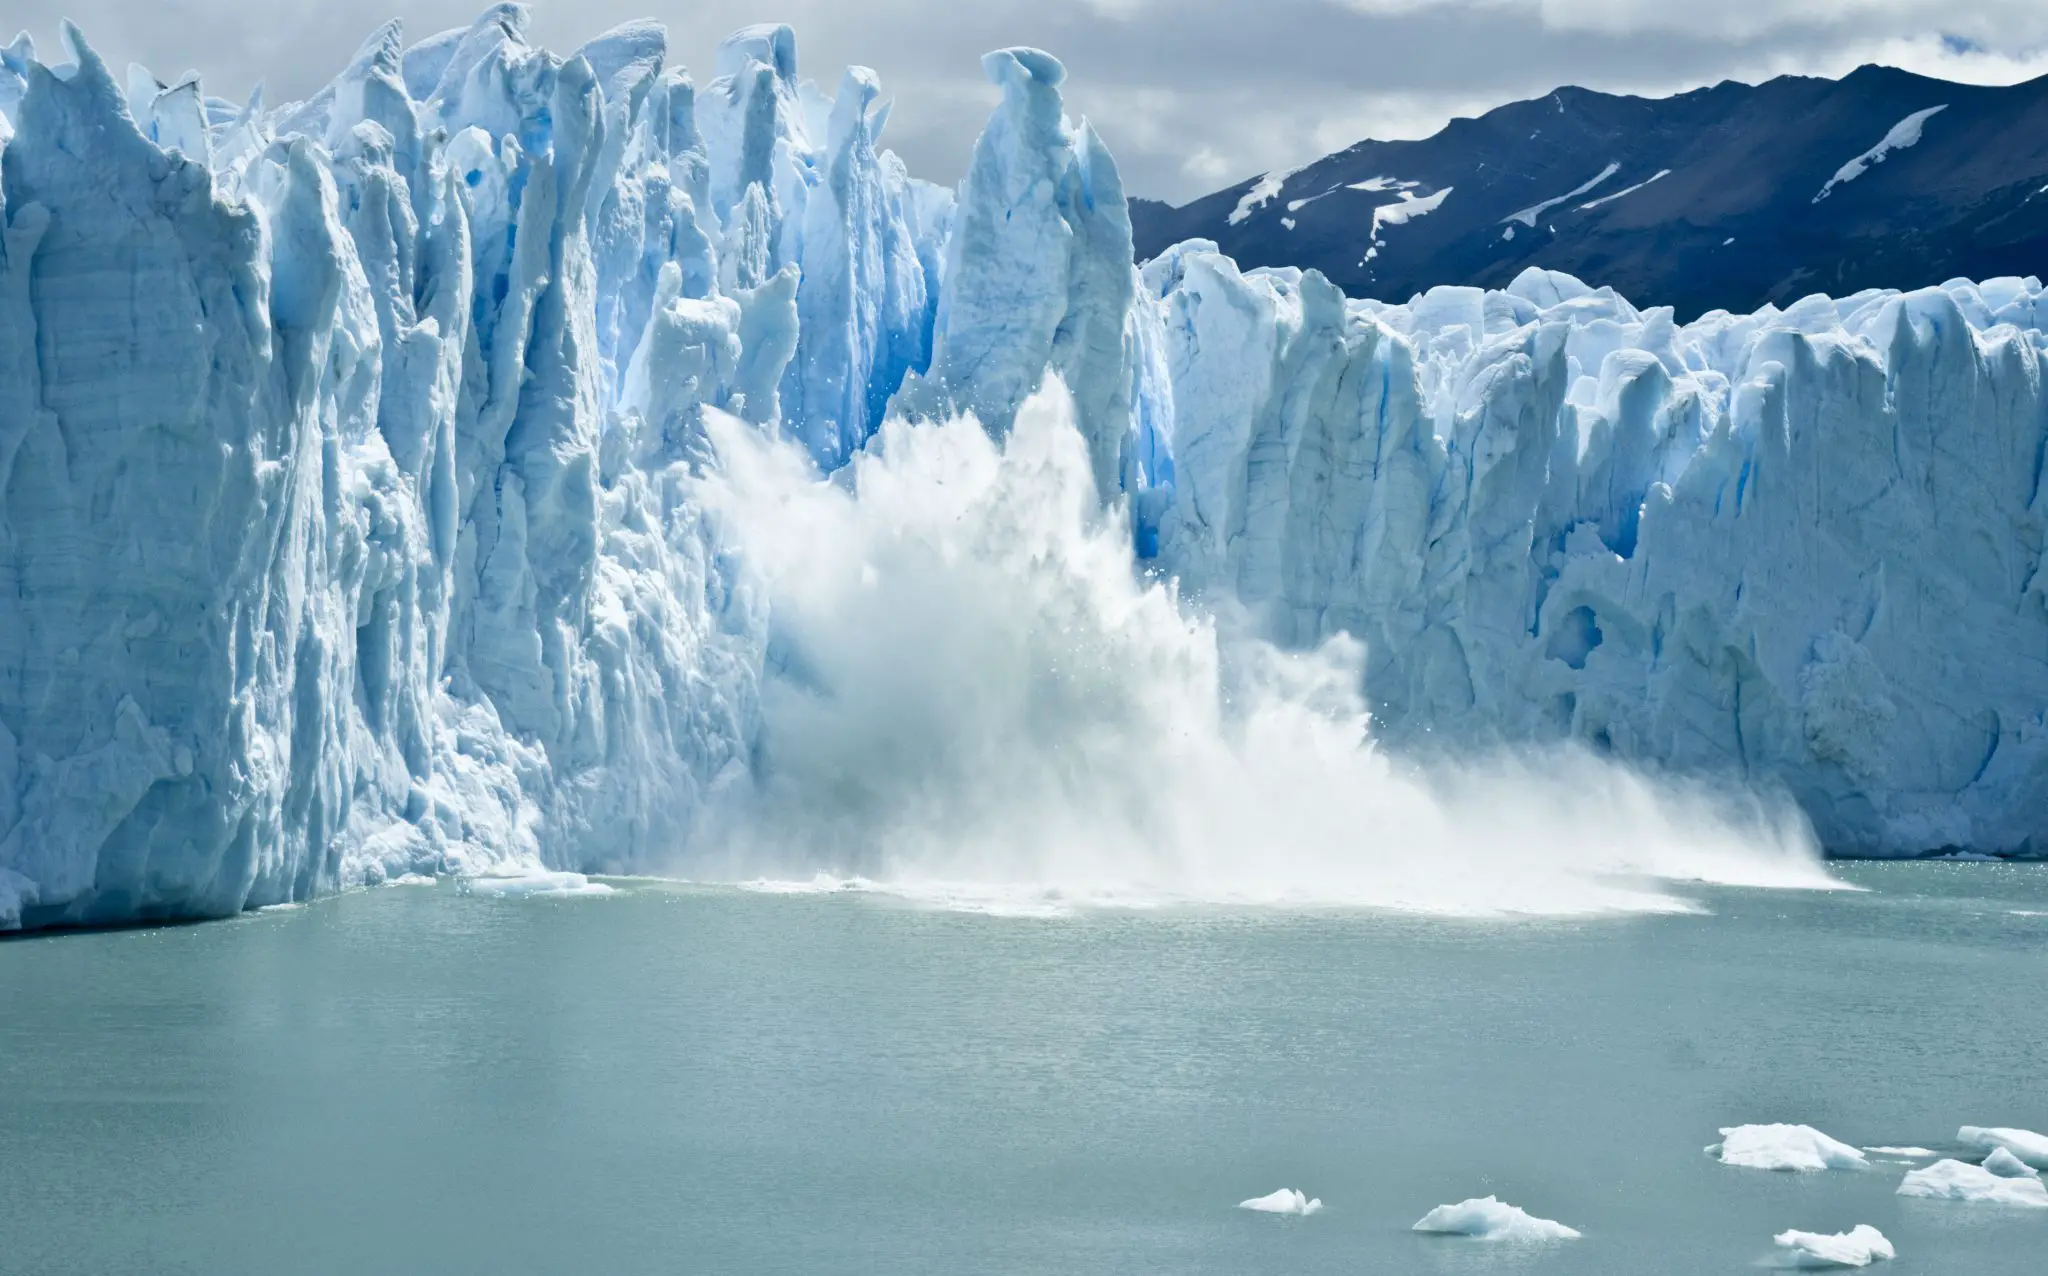 Perito Moreno glacier, Patagonia